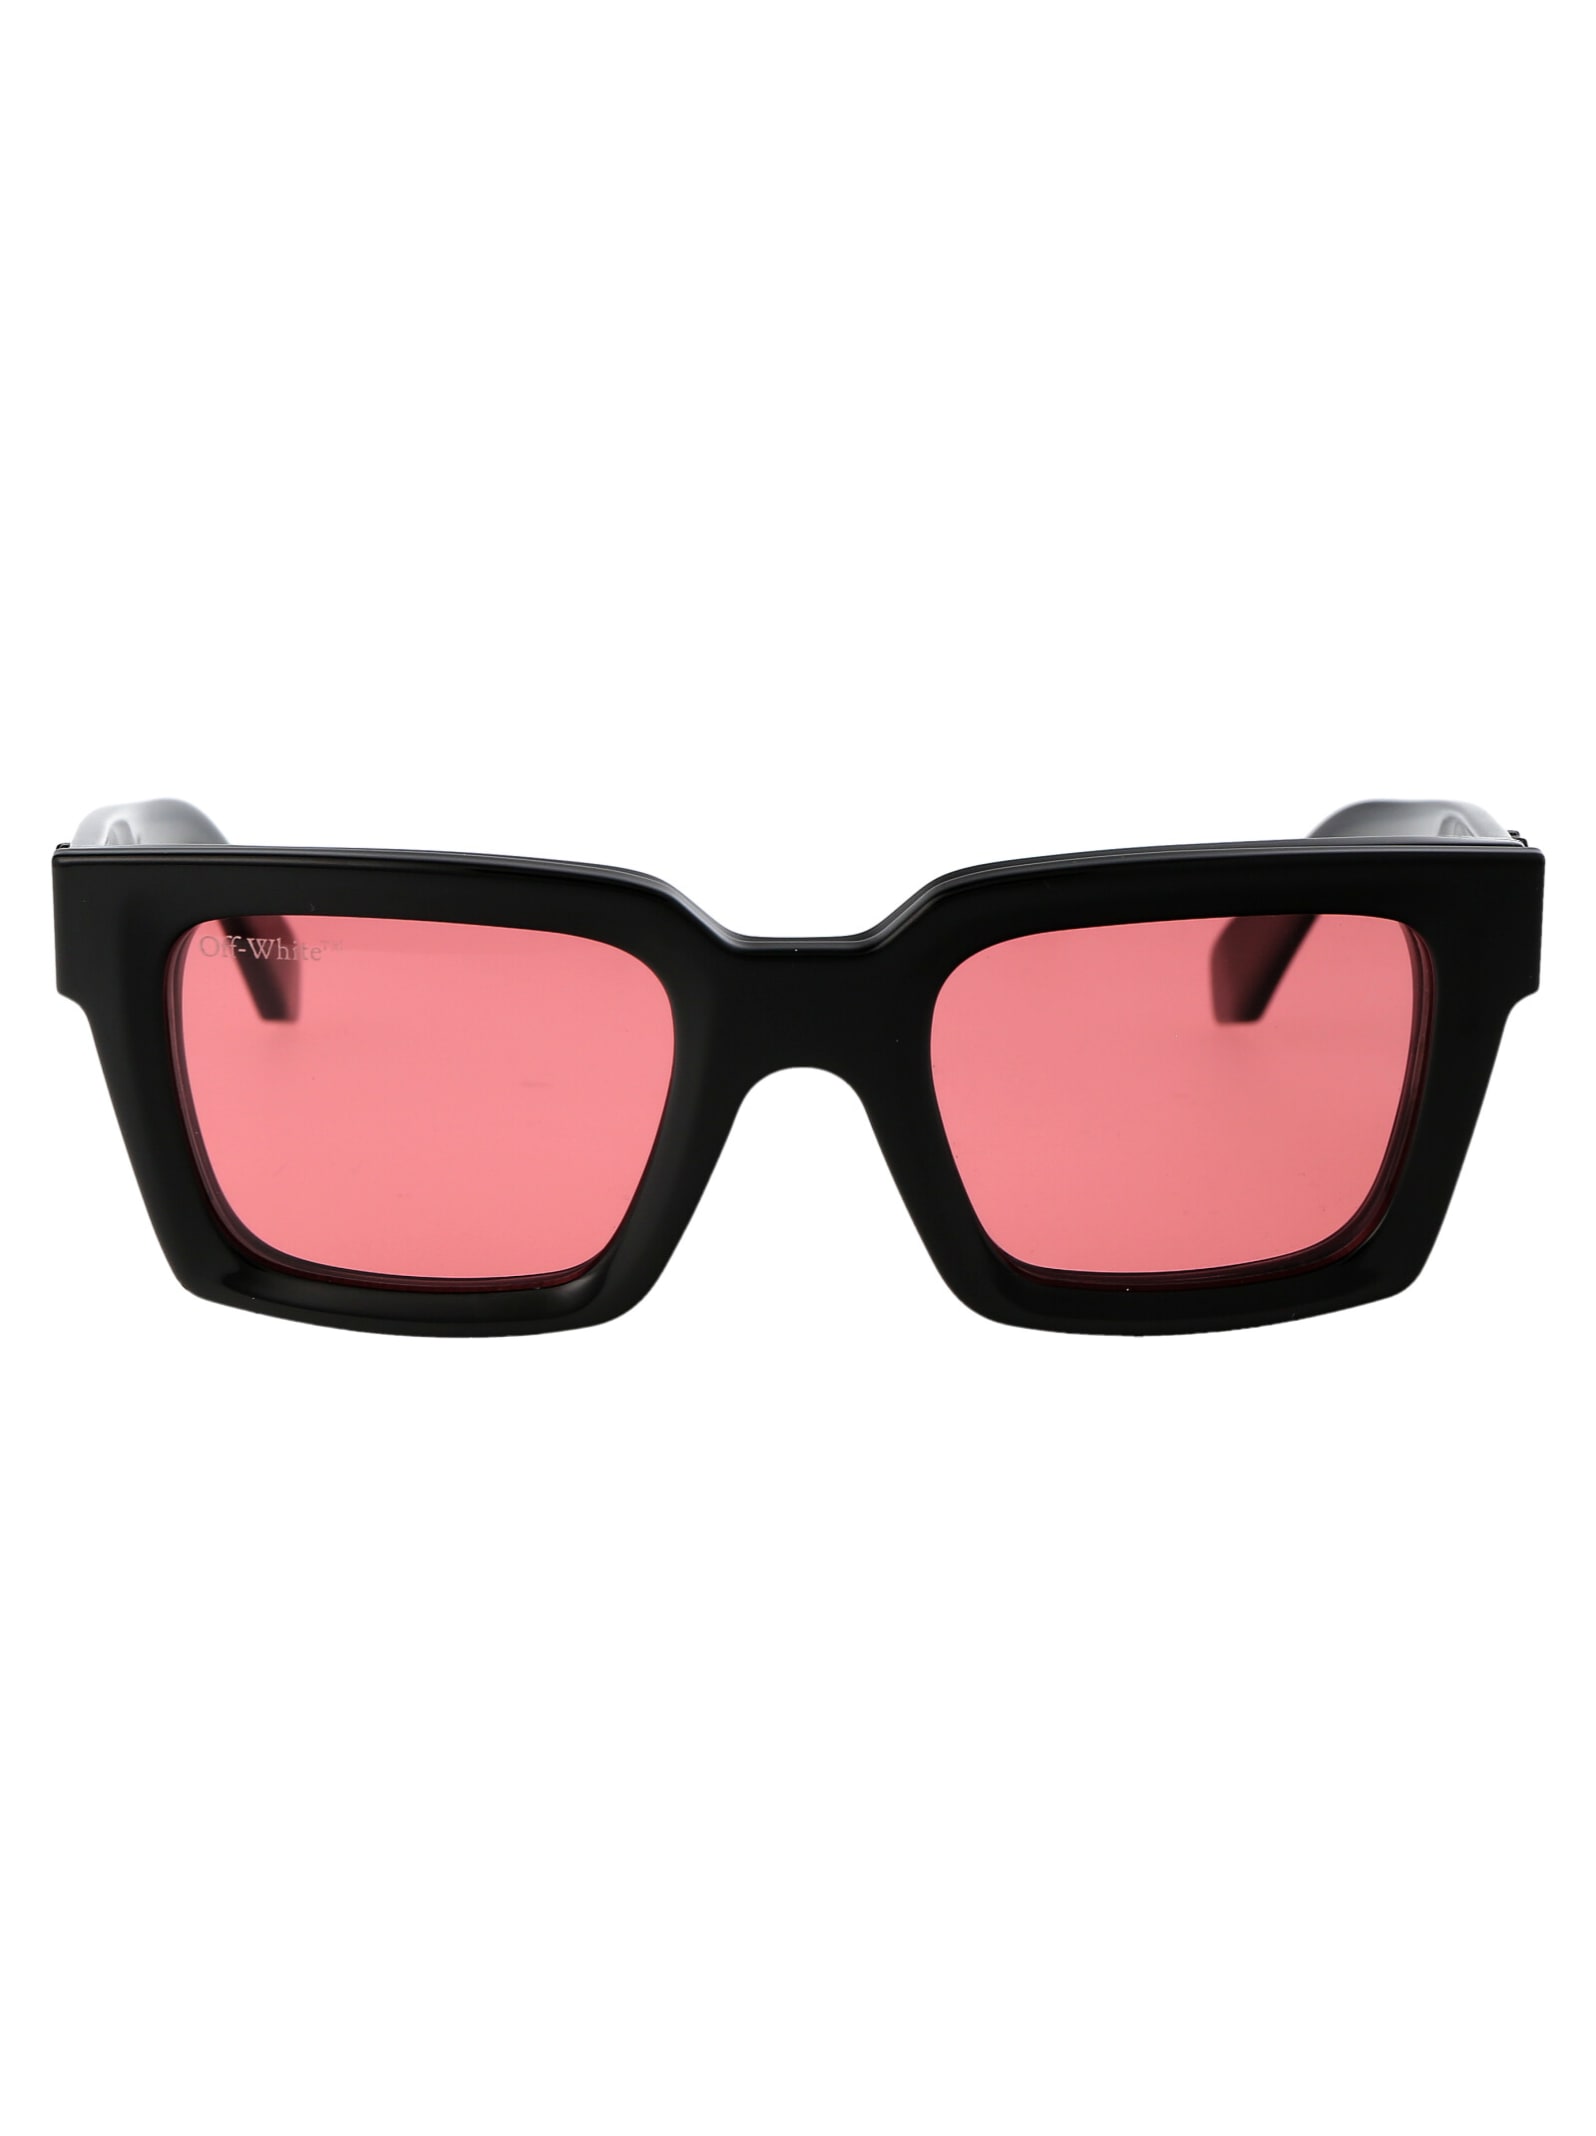 Off-white Clip On Sunglasses In 1025 Black